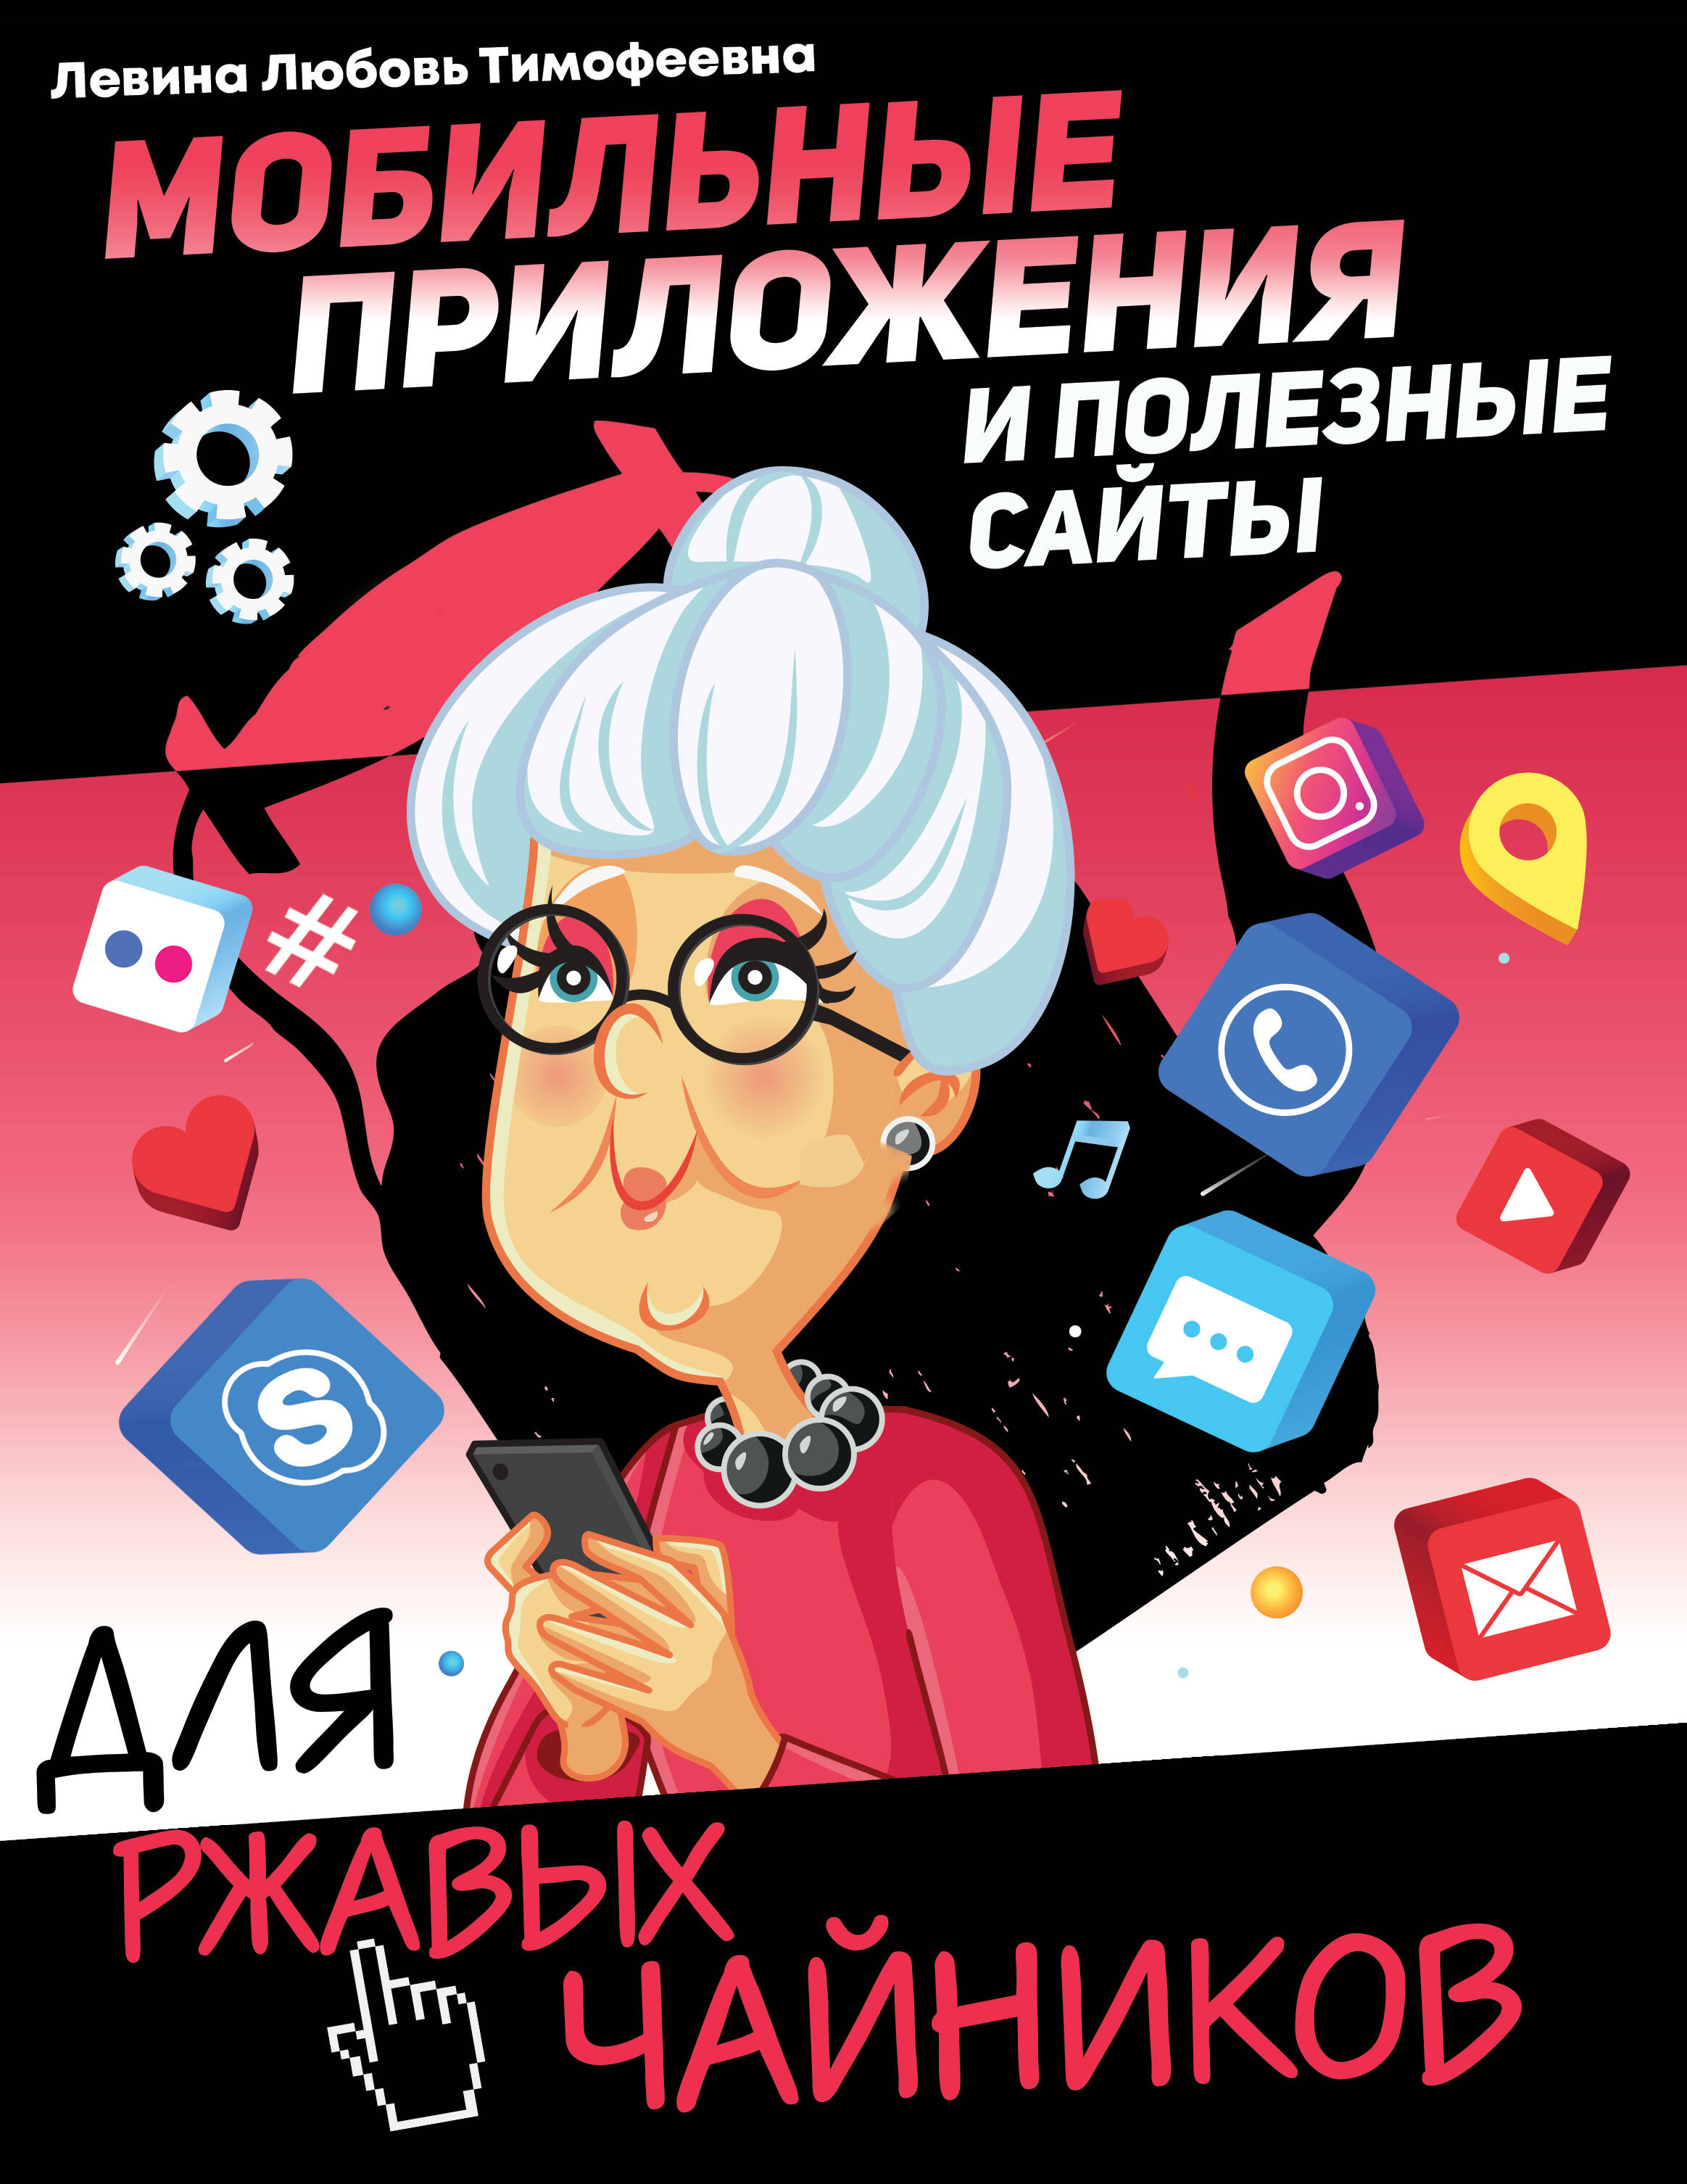 Левина Любовь Тимофеевна Мобильные приложения и полезные сайты для ржавых чайников - страница 0